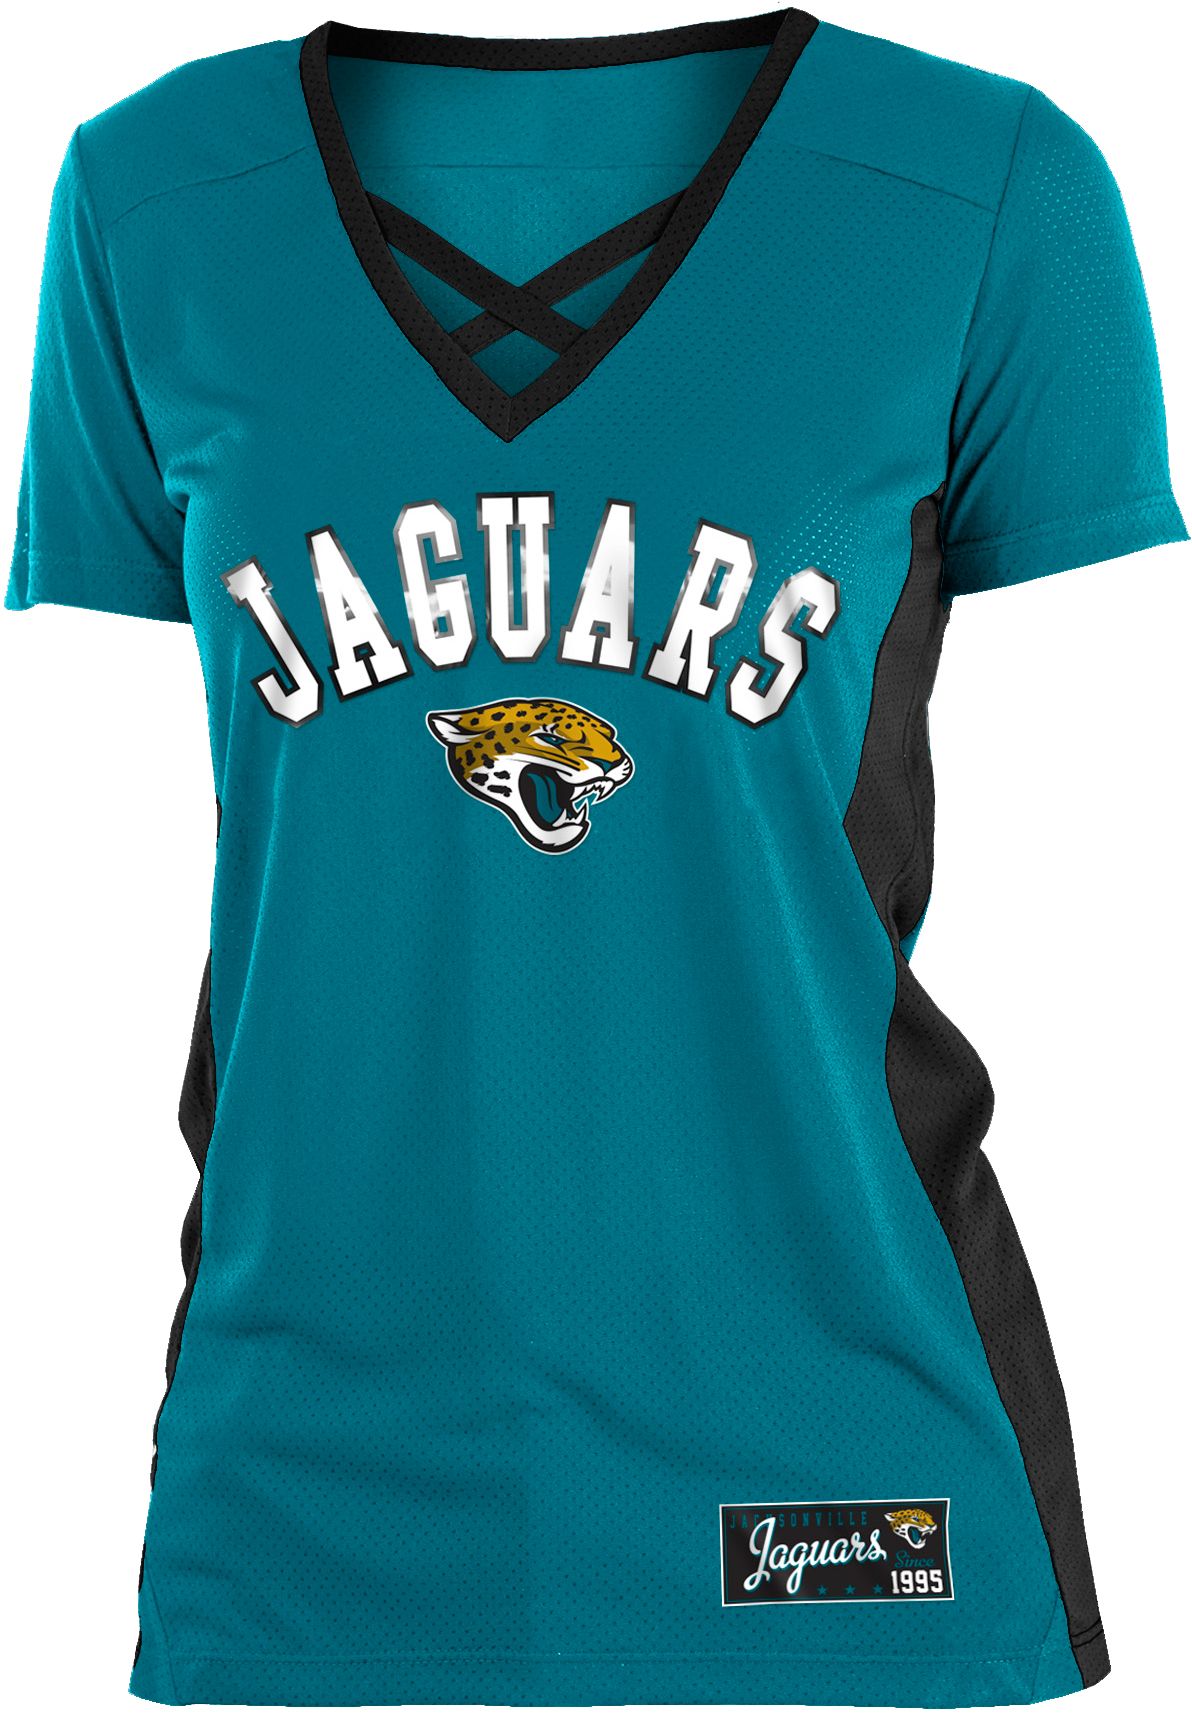 jacksonville jaguars teal jersey